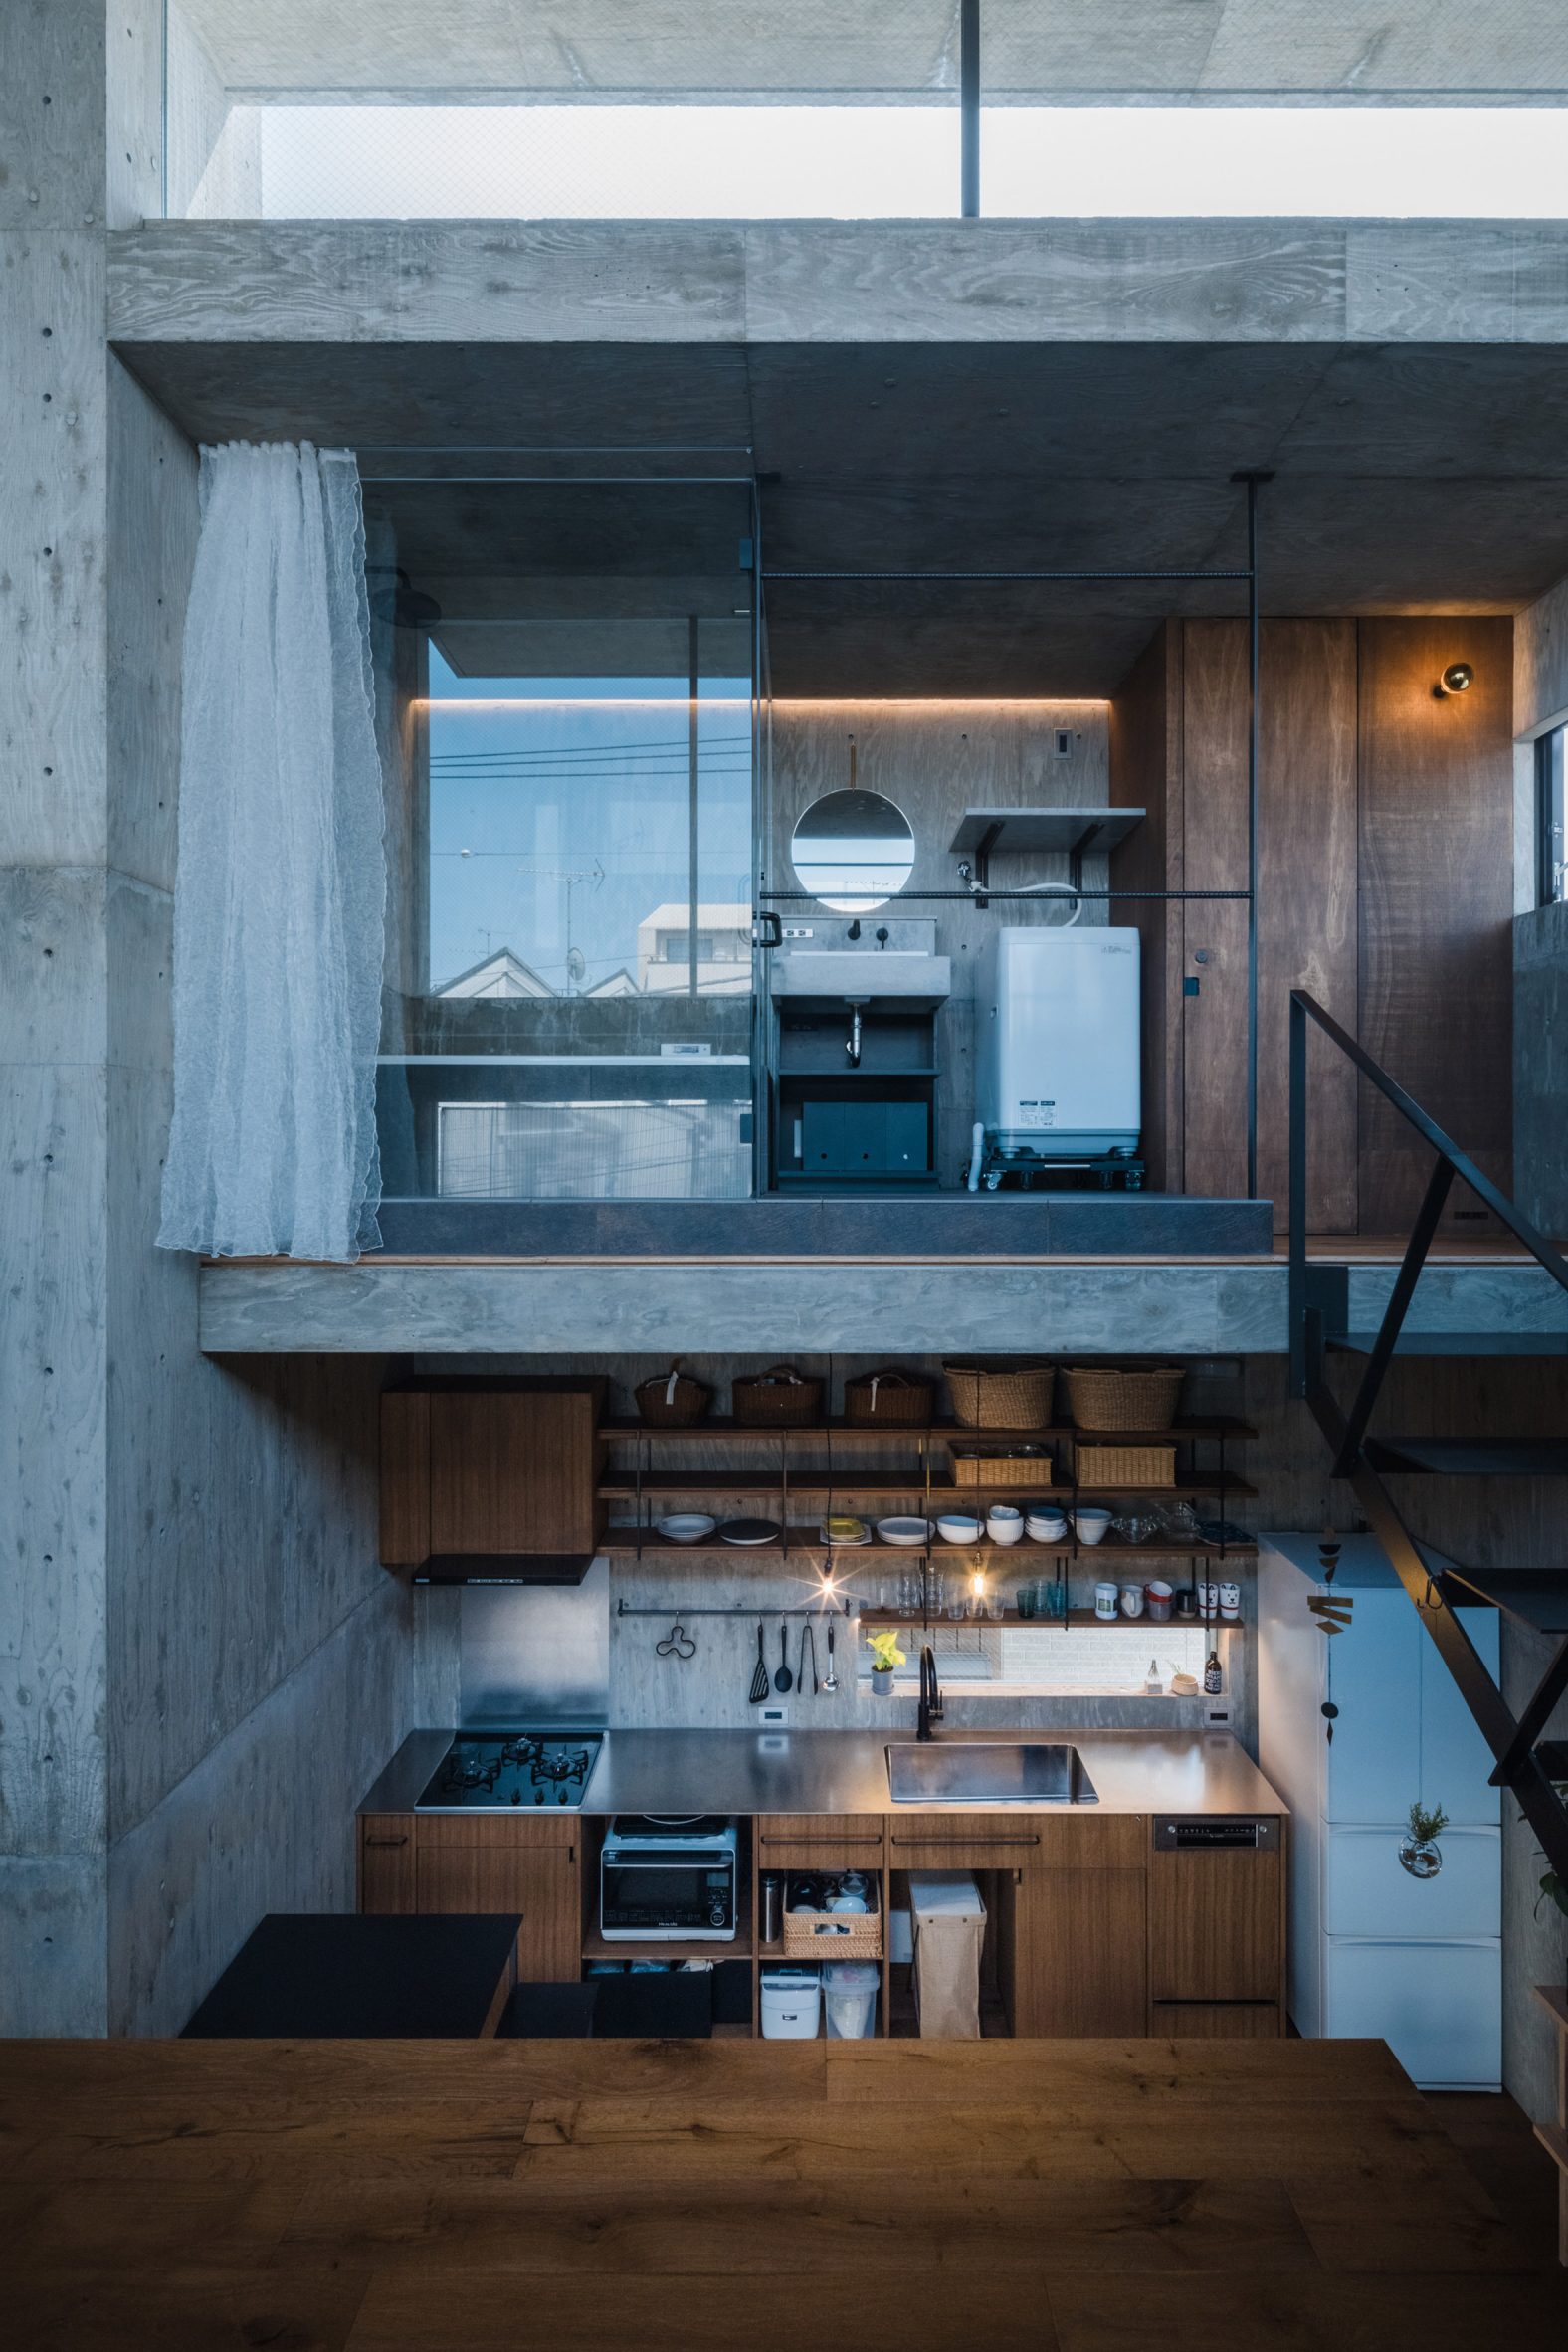 Multi-level concrete home interior